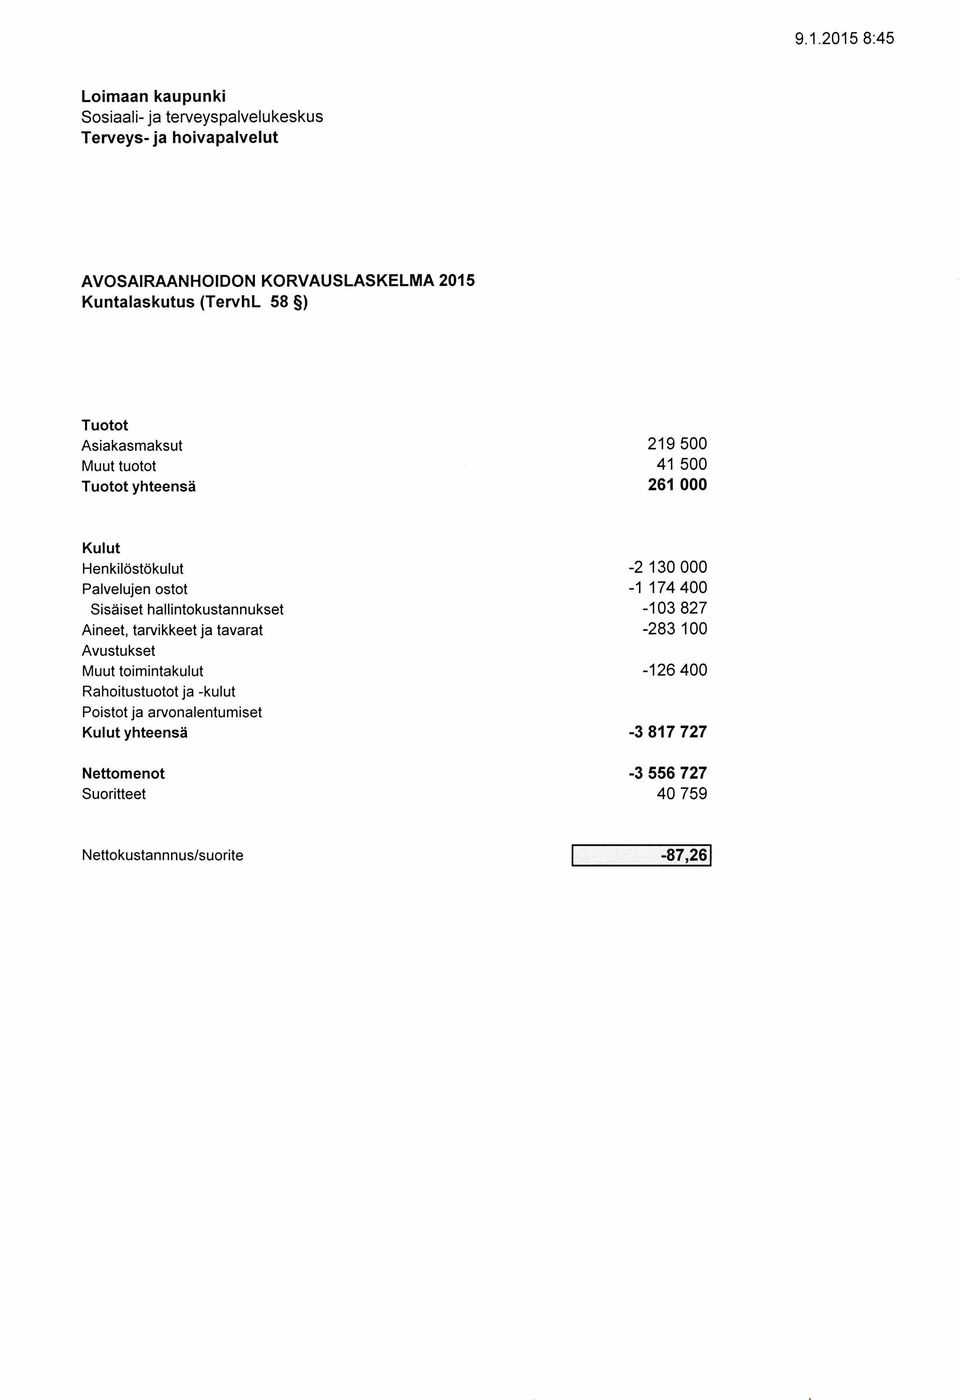 Sisäiset hallintokustannukset -13 827 Aineet, tarvikkeet ja tavarat -283 1 Muut